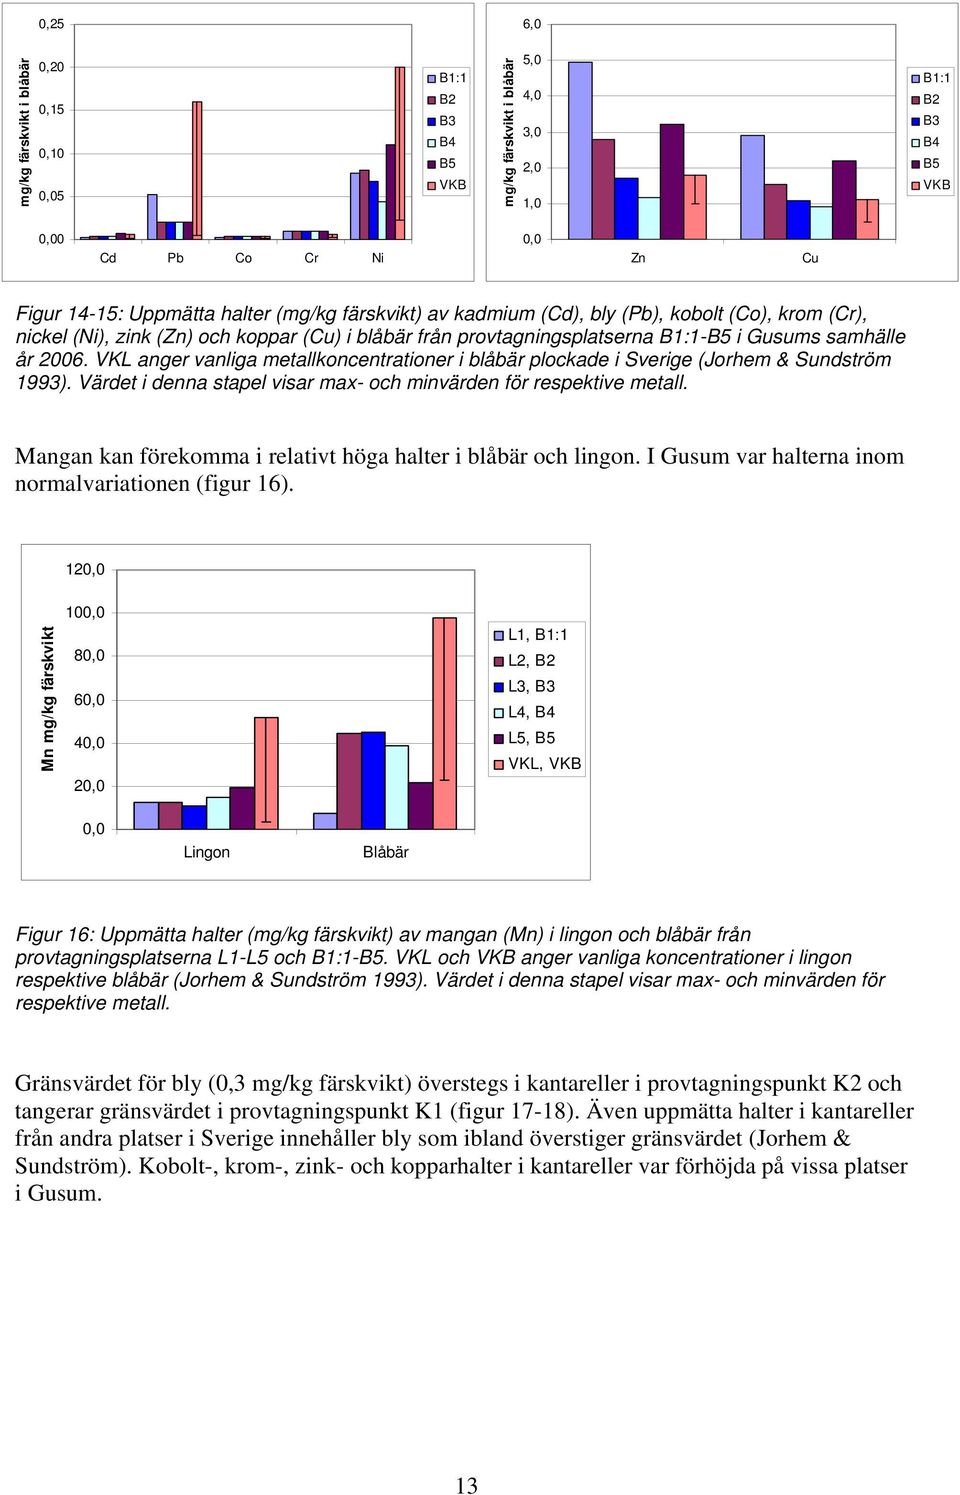 VKL anger vanliga metallkoncentrationer i blåbär plockade i Sverige (Jorhem & Sundström 1993). Värdet i denna stapel visar max- och minvärden för respektive metall.